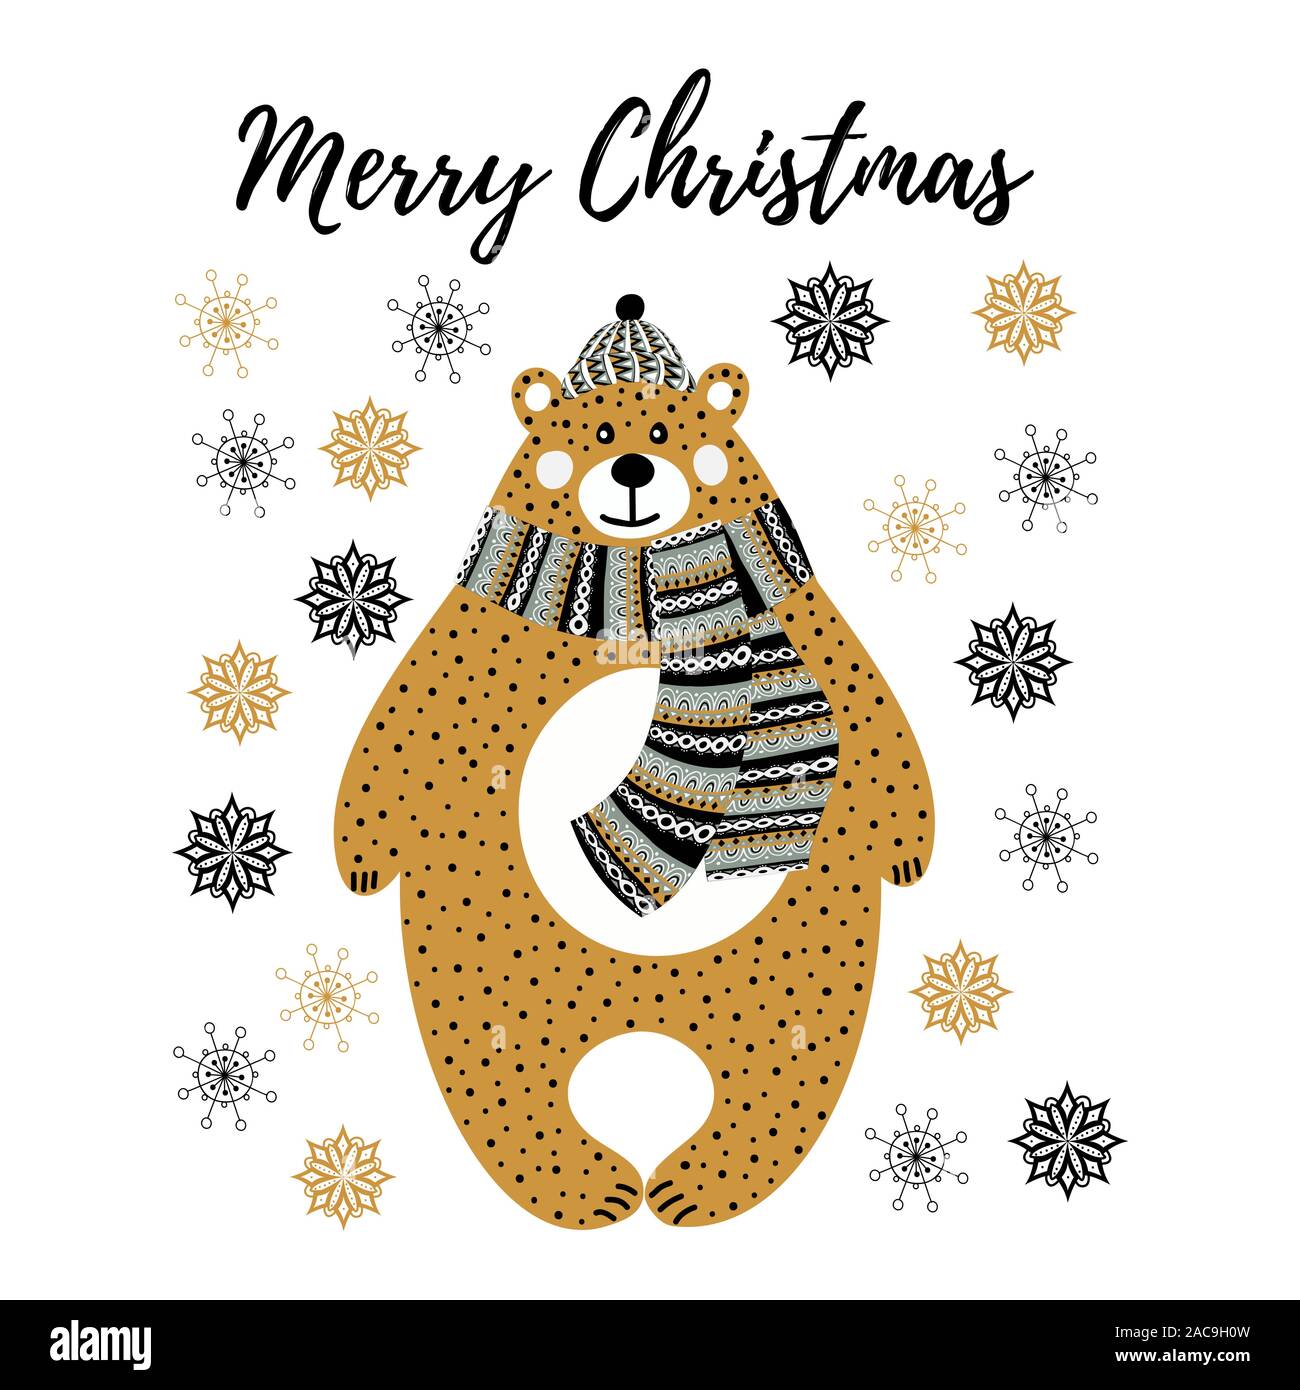 Vector Art illustration Noël monochrome avec cartoon bear et flocons sur fond blanc. Pour l'utilisation de l'oeuvre dans la conception de cartes ou d'affiches Illustration de Vecteur